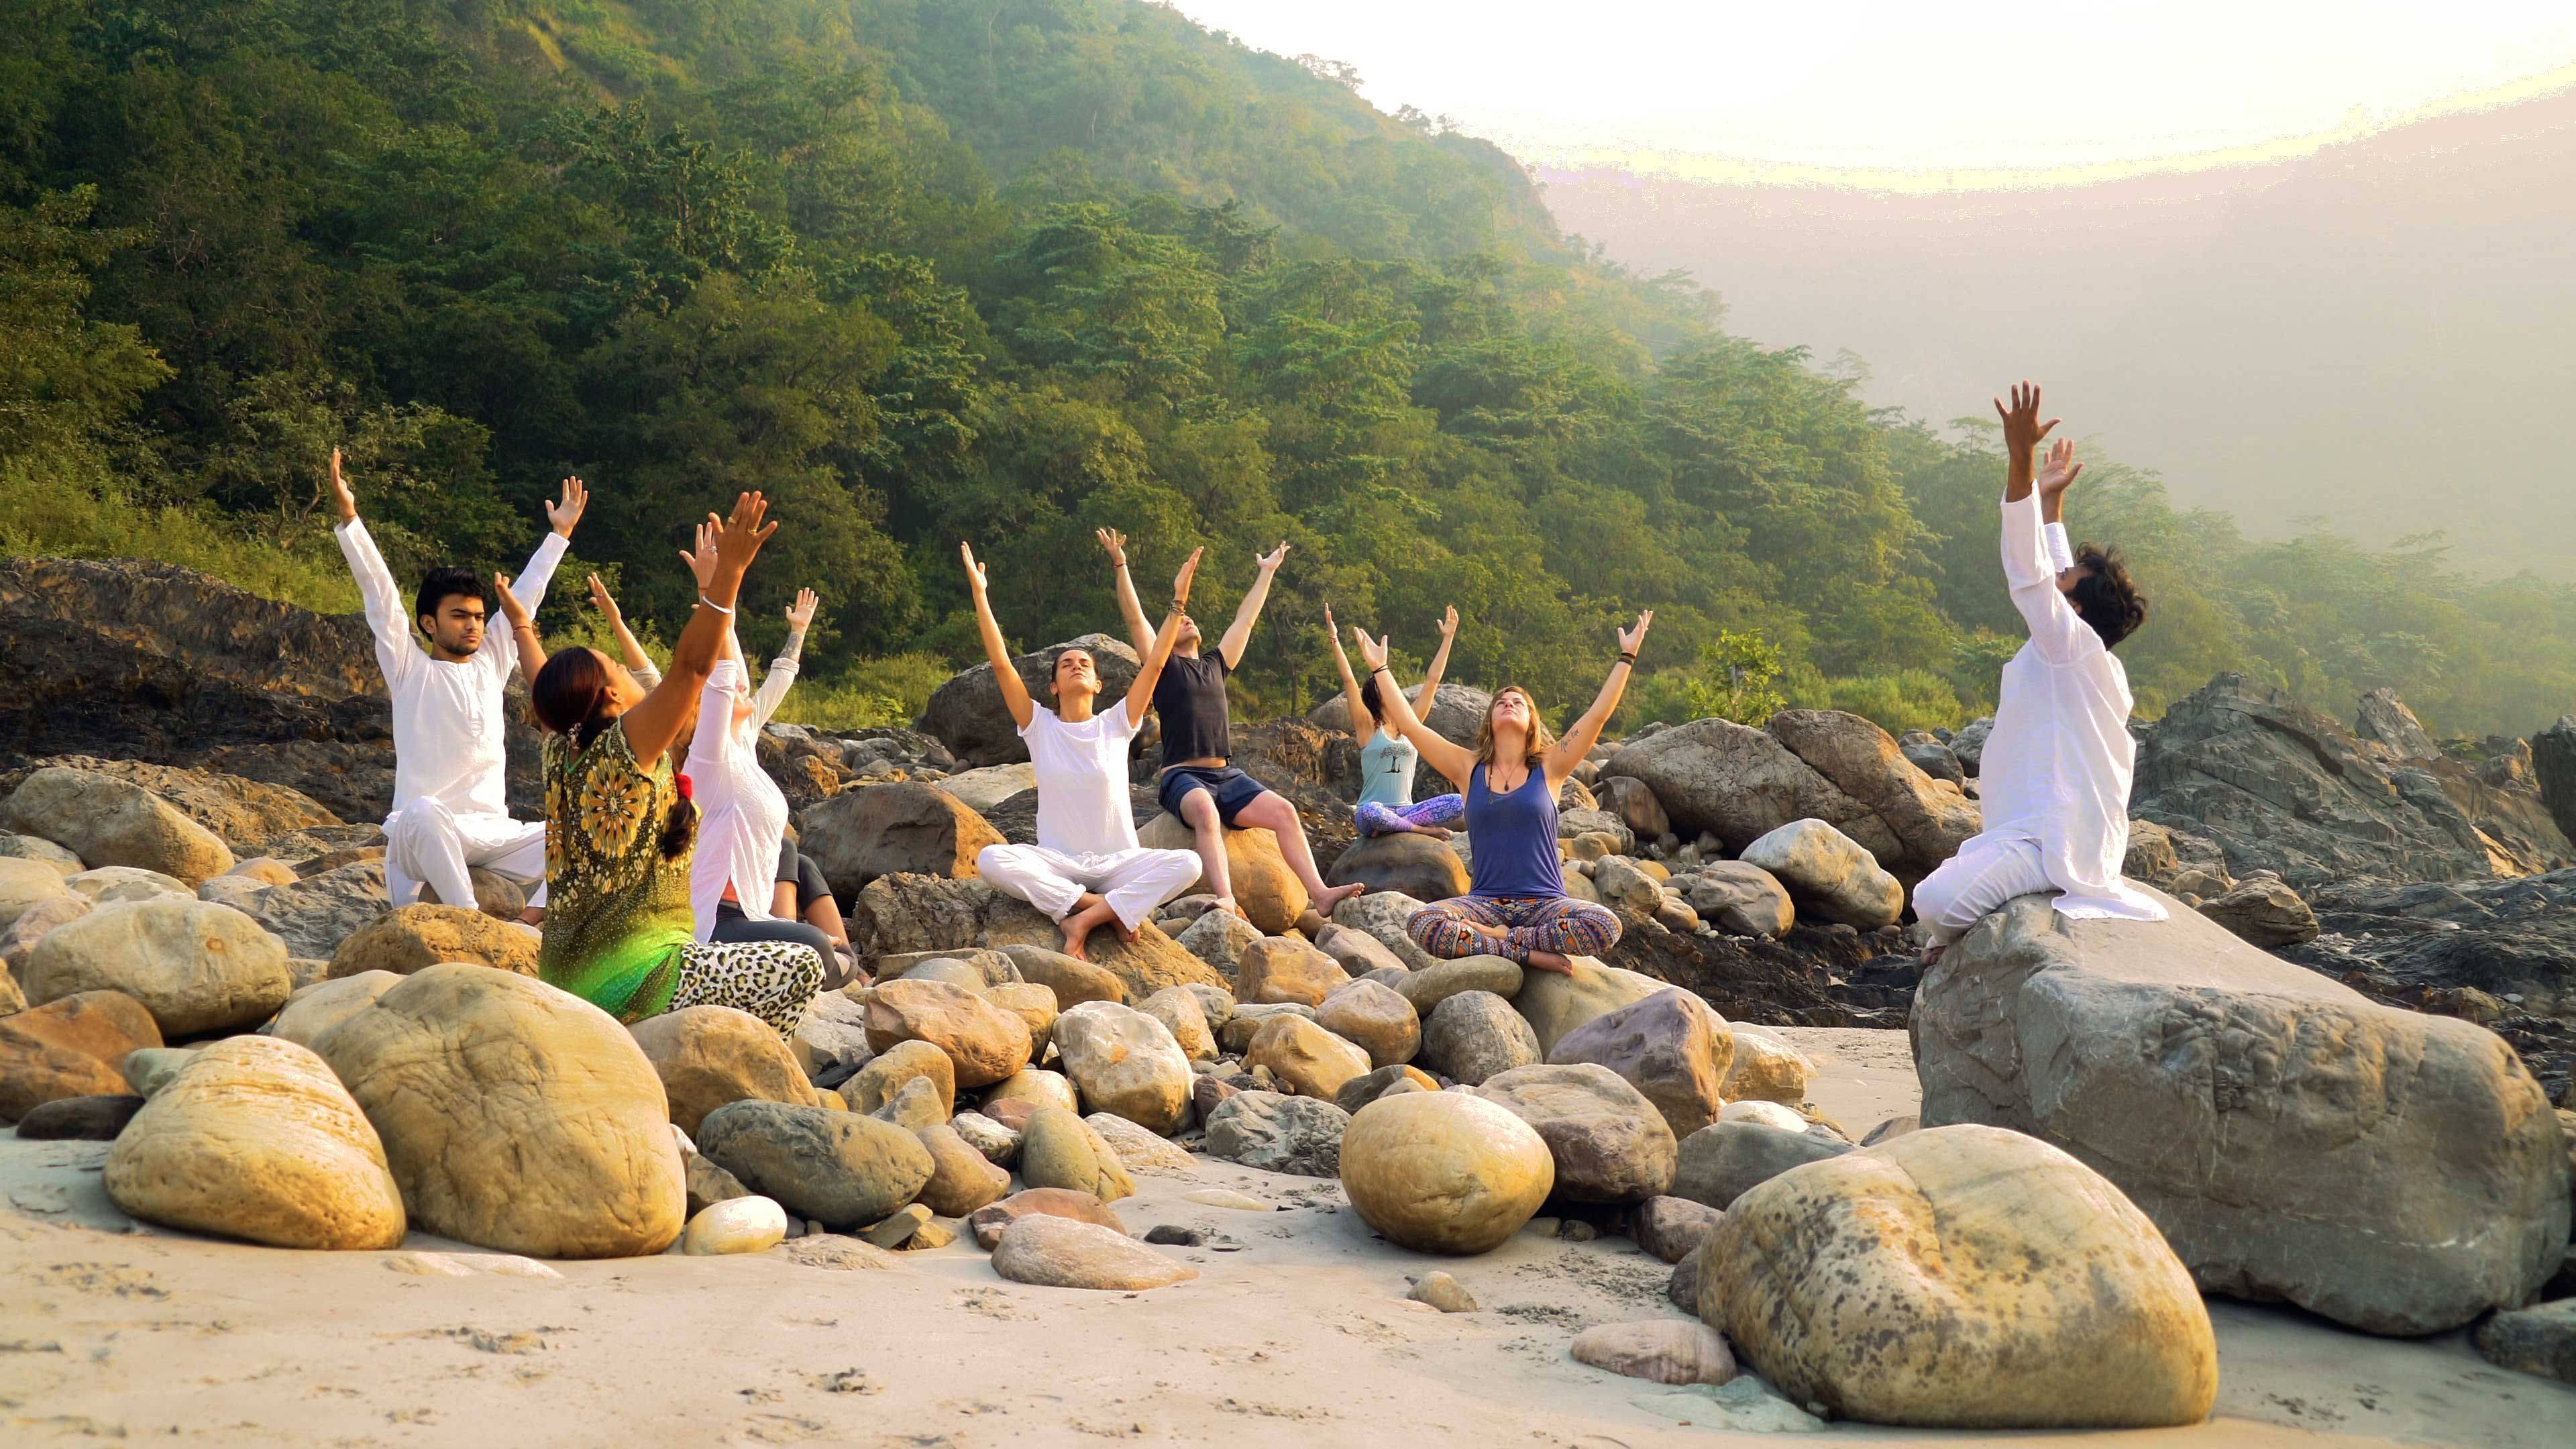 15 преимуществ йога туров в сравнении с обычным отдыхом